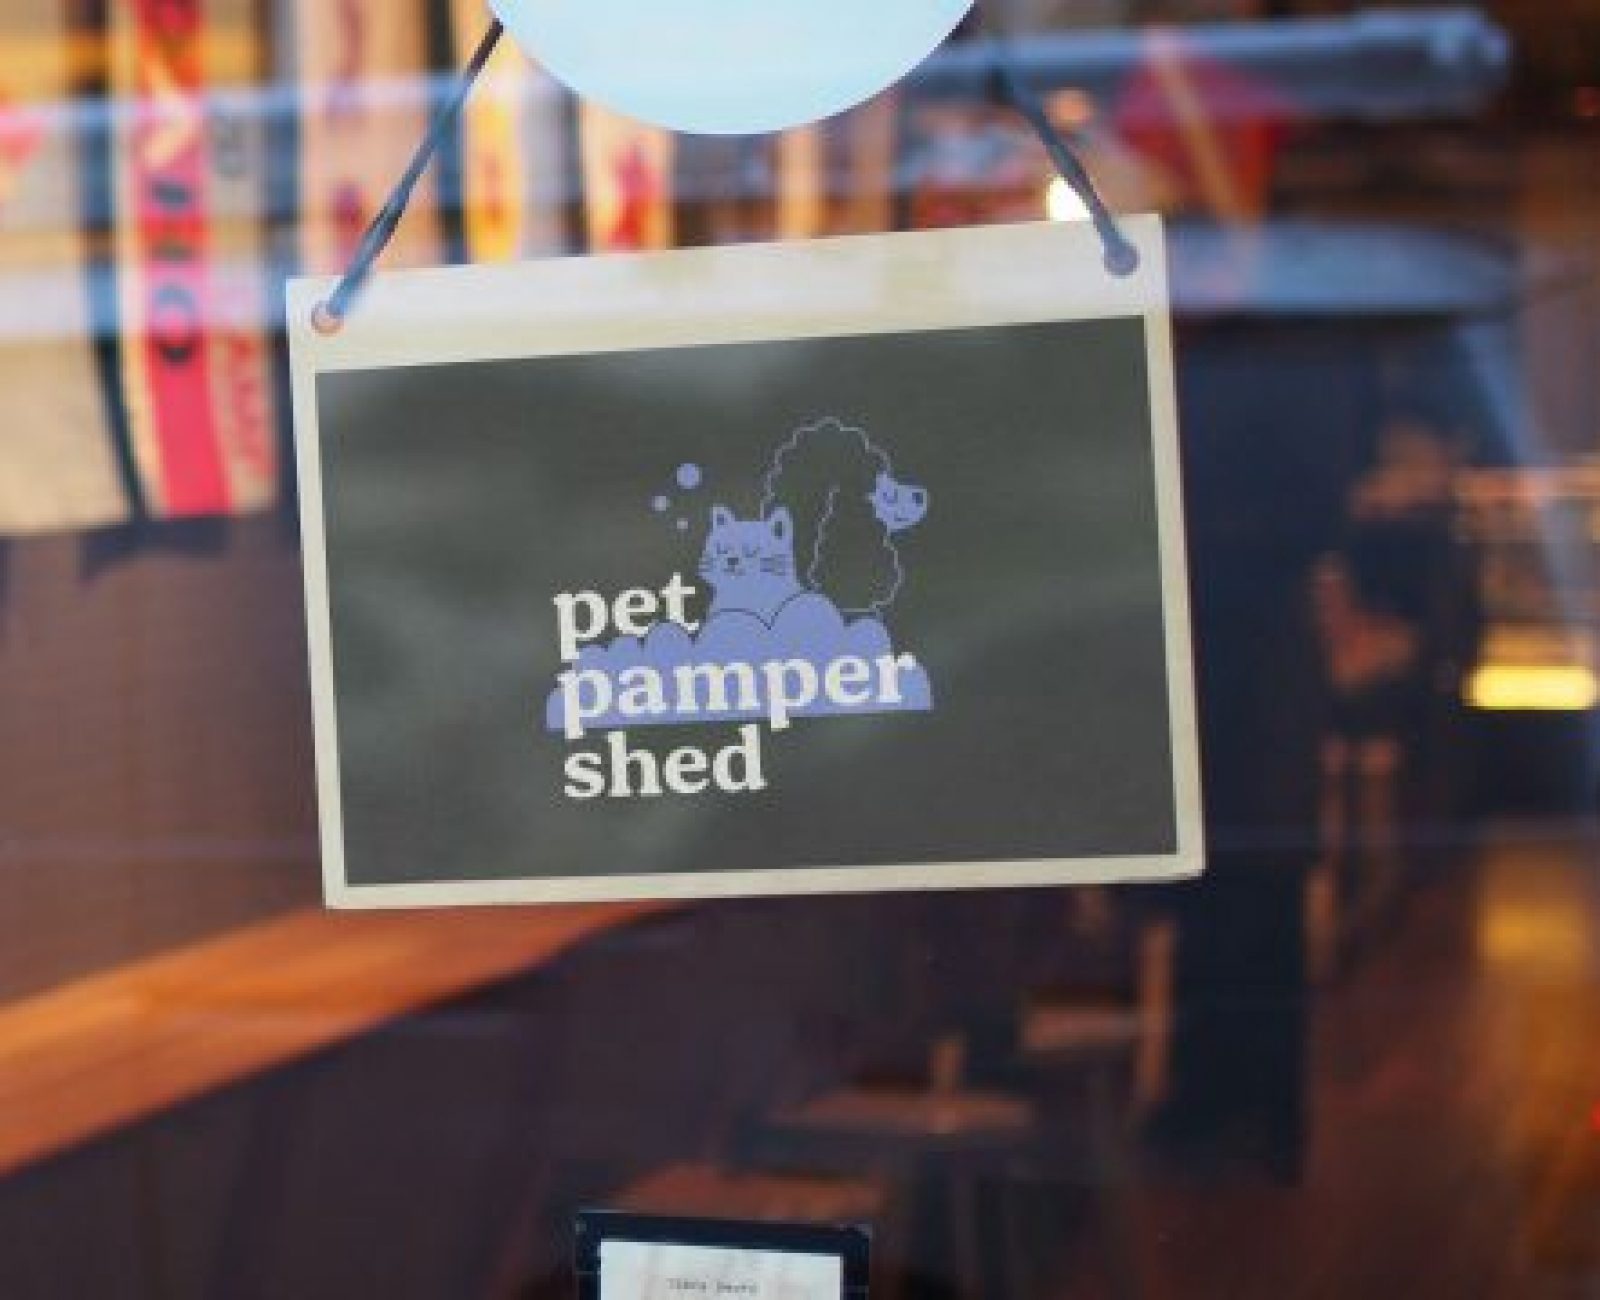 Pet Pamper Shop front Sign